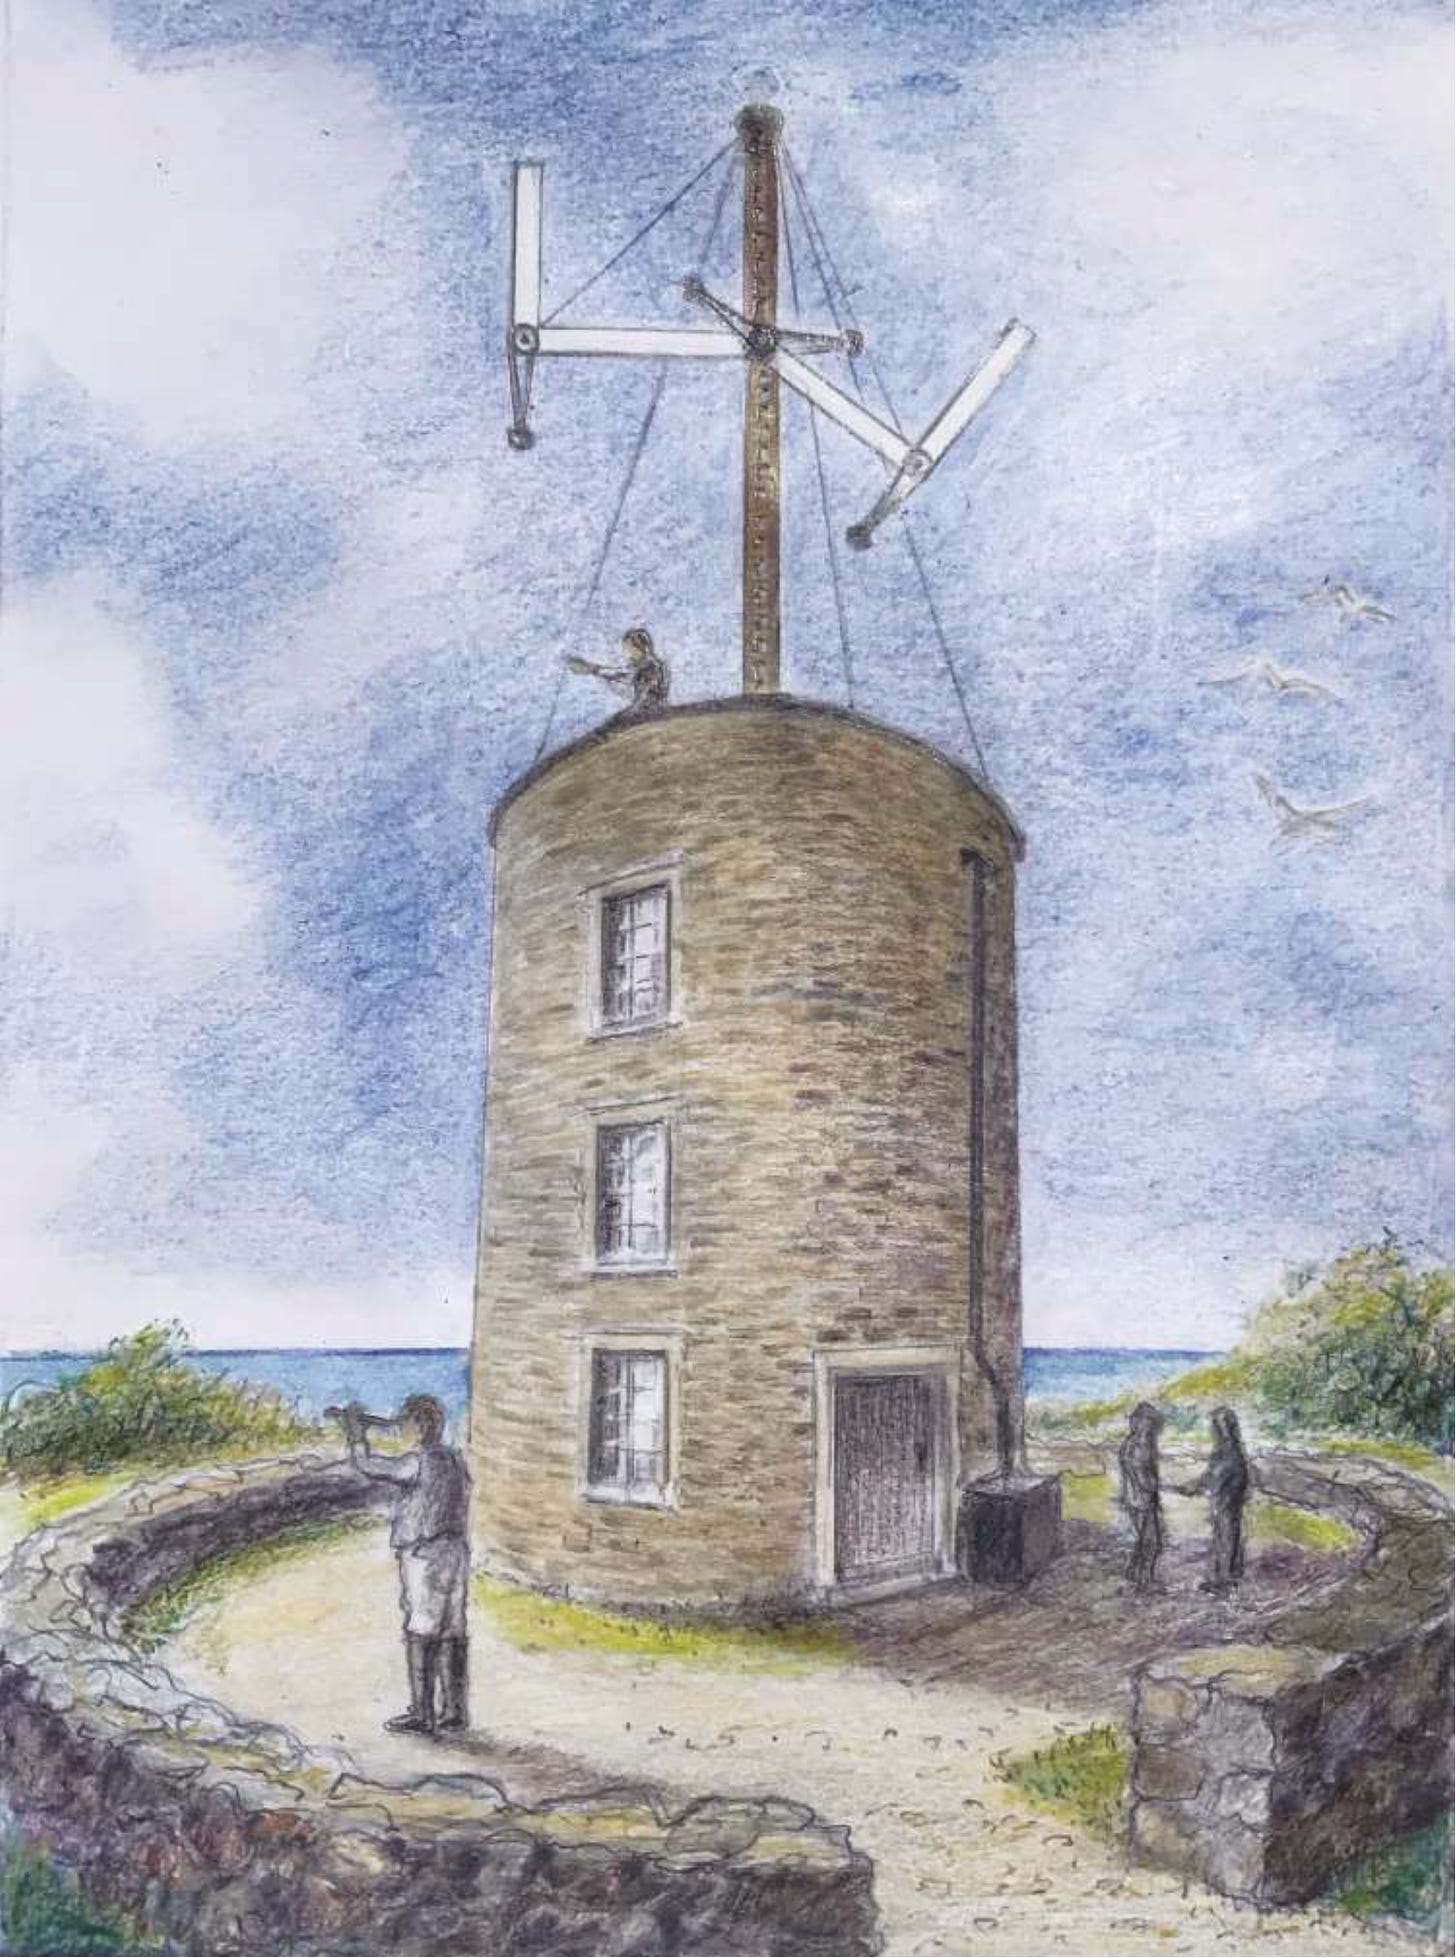 Telegraph Tower Alderney, illustration Nick Collier, courtesy Visit Alderney